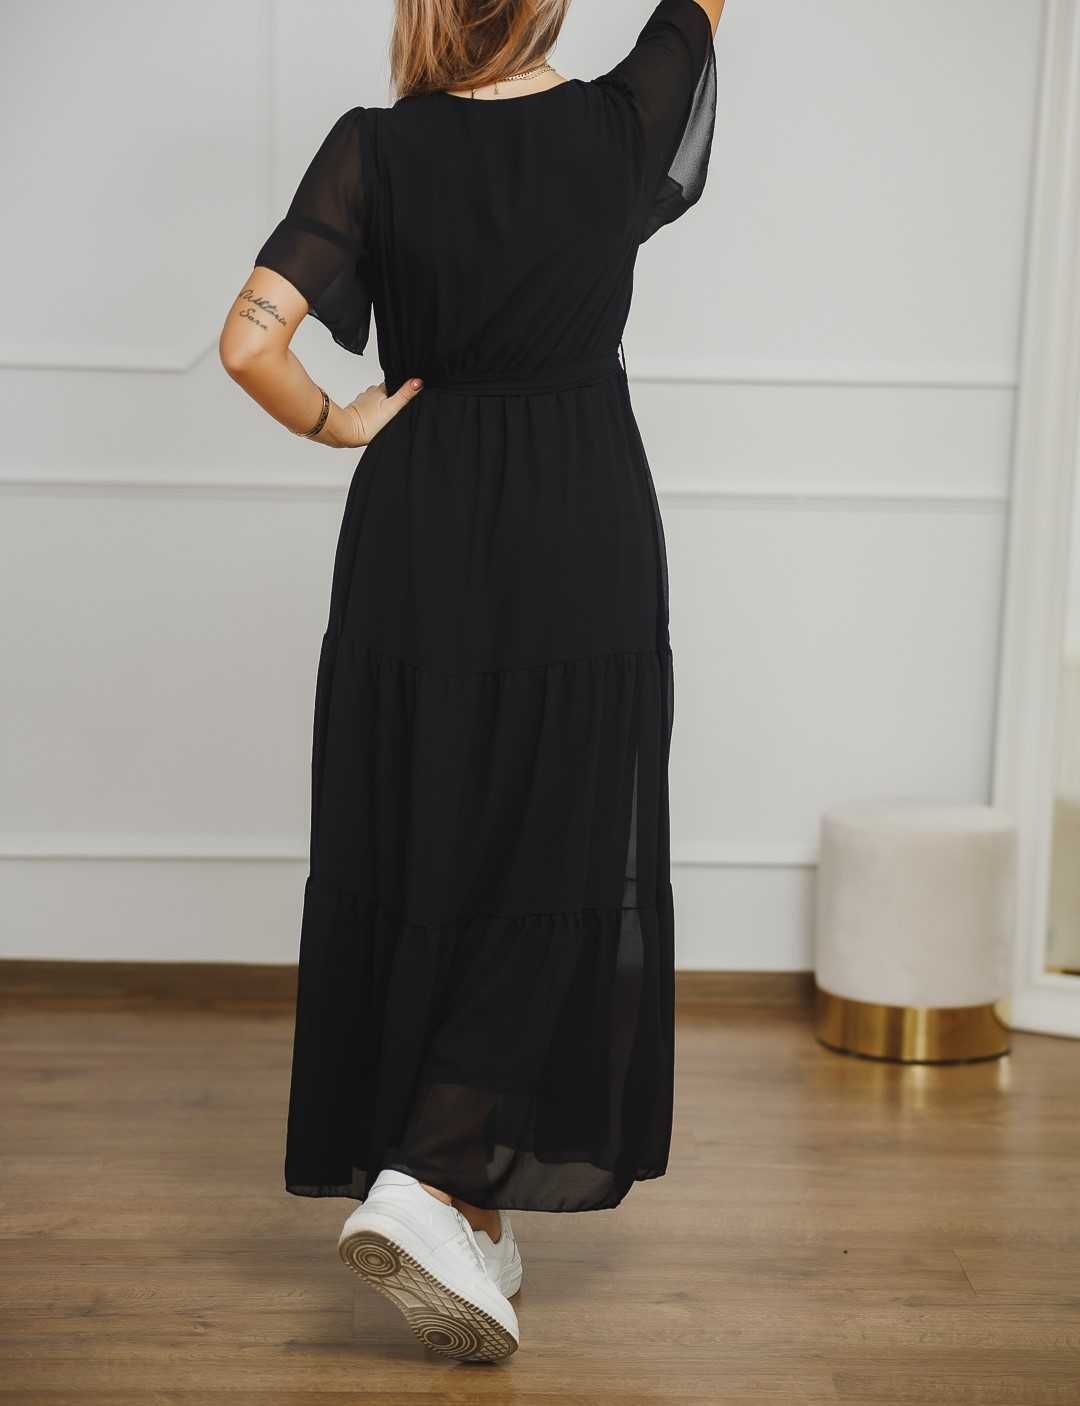 Sukienka długa, czarna z żorżety DX12559 rozmiar M/L